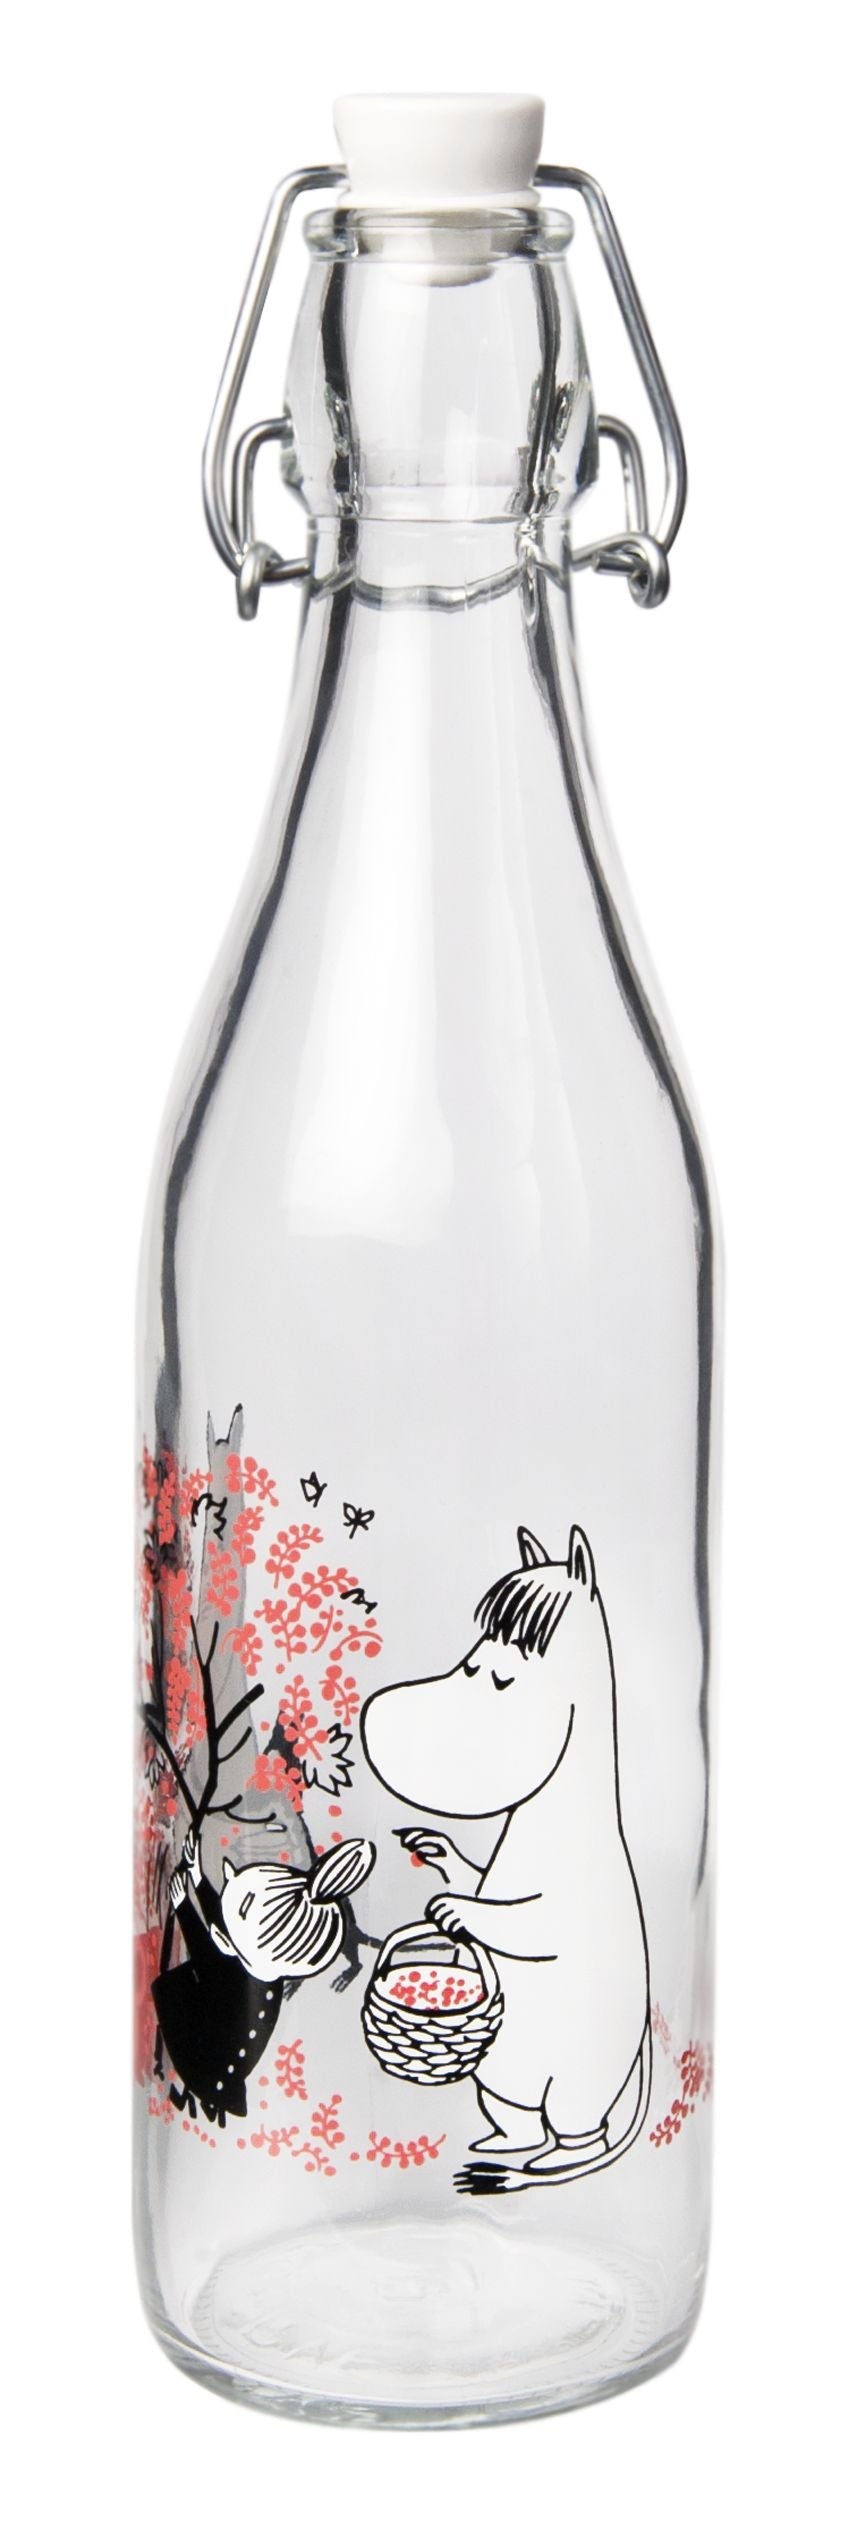 Botella de vidrio de Muurla Moomin, bayas